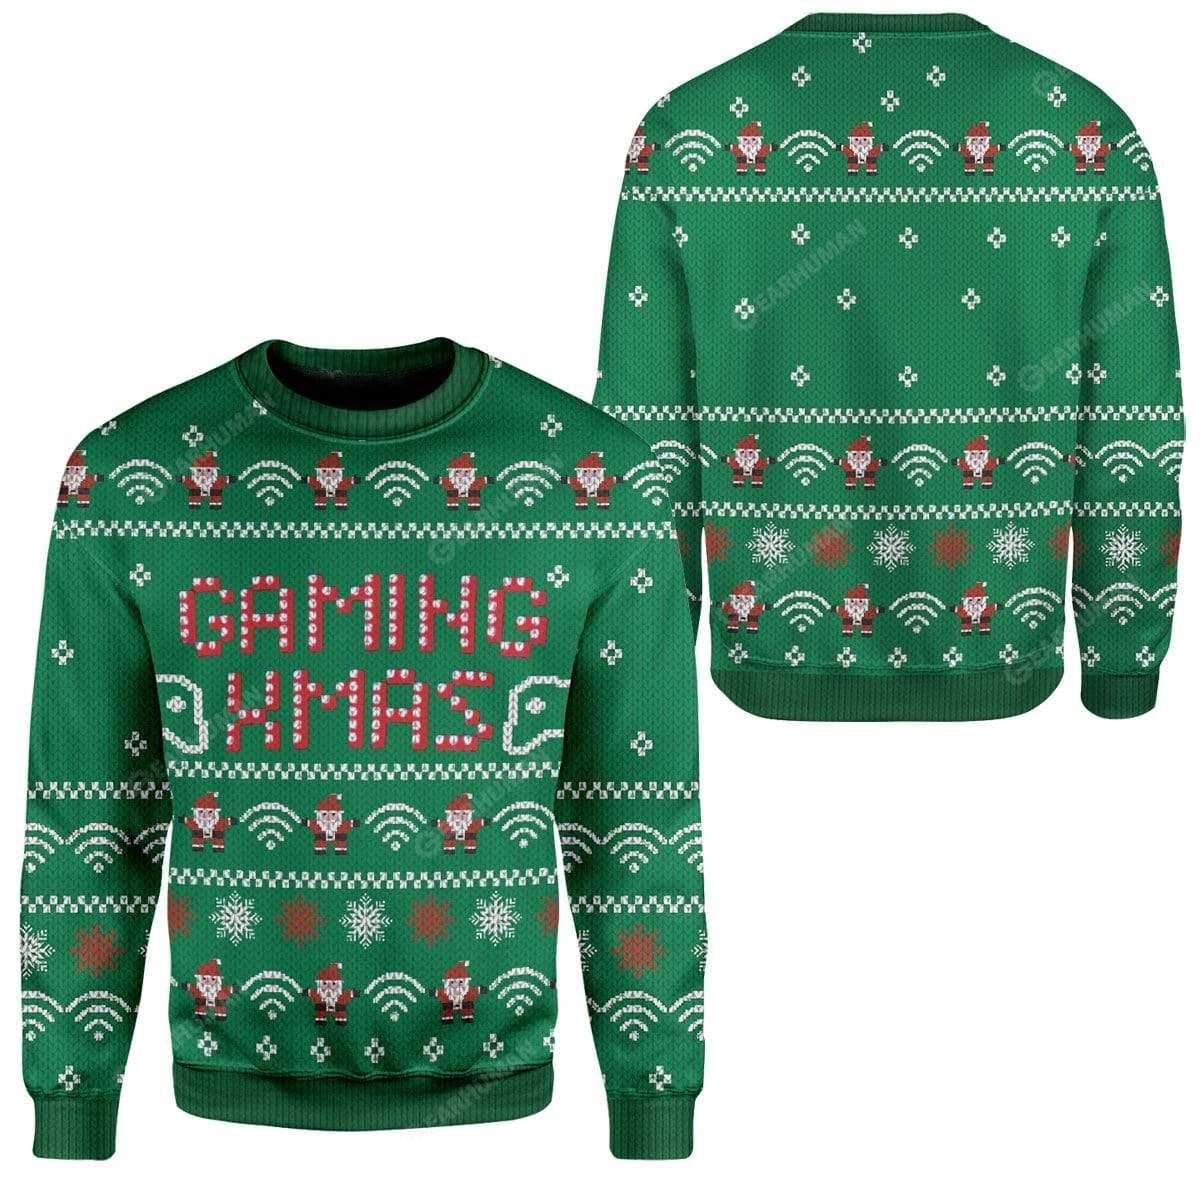 Gaming Xmas ugly sweater